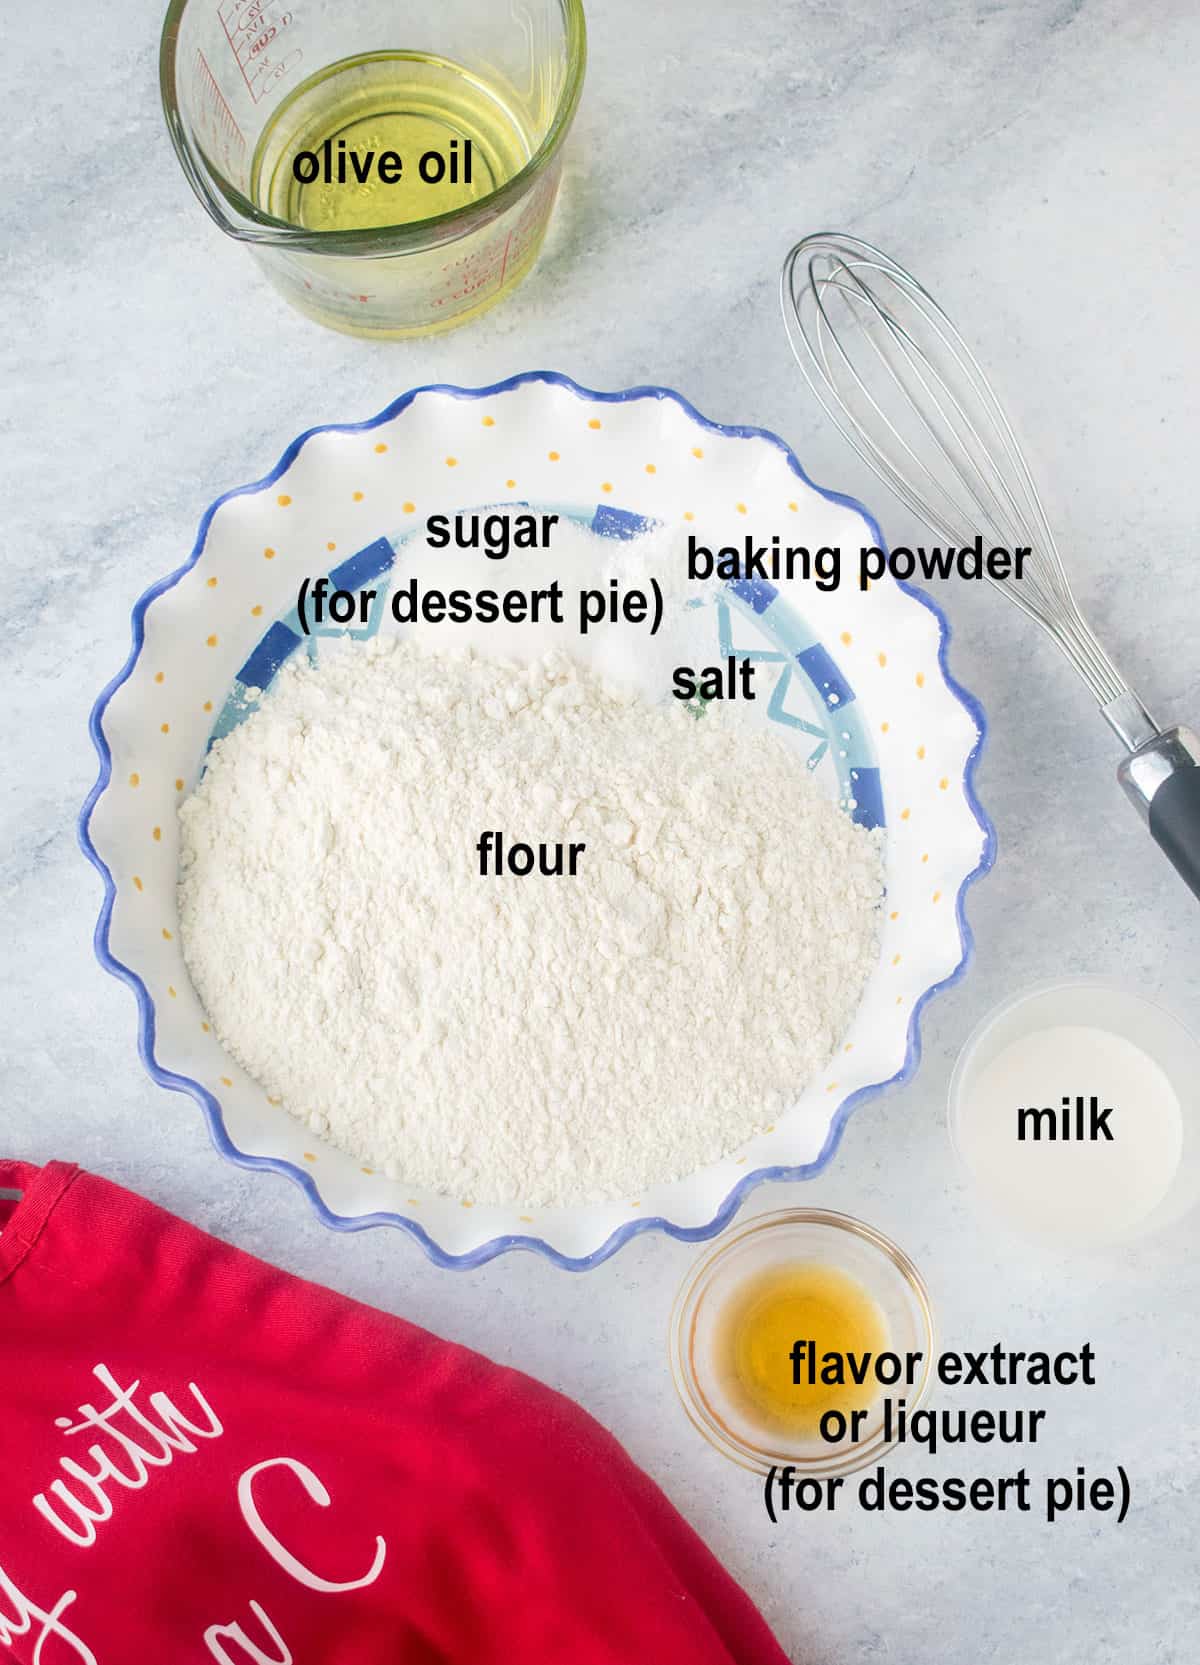 oil, flour, salt, baking powder, milk, flavoring 